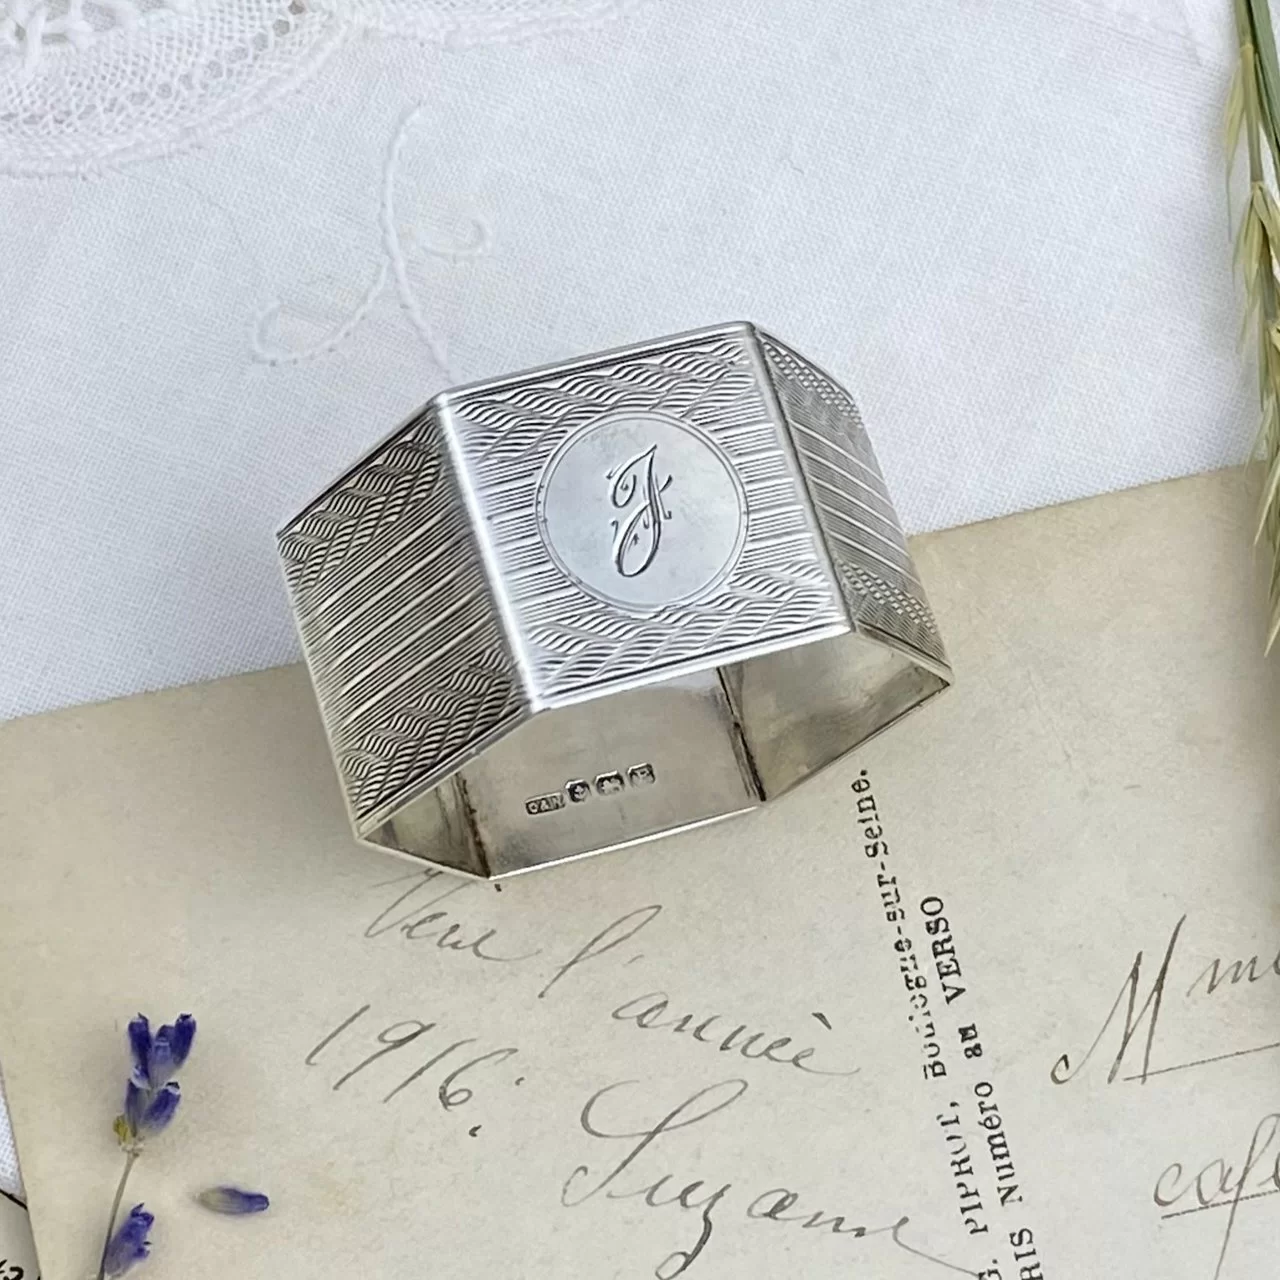 Антикварное английское кольцо для салфетки Crisford & Norris 1930 год